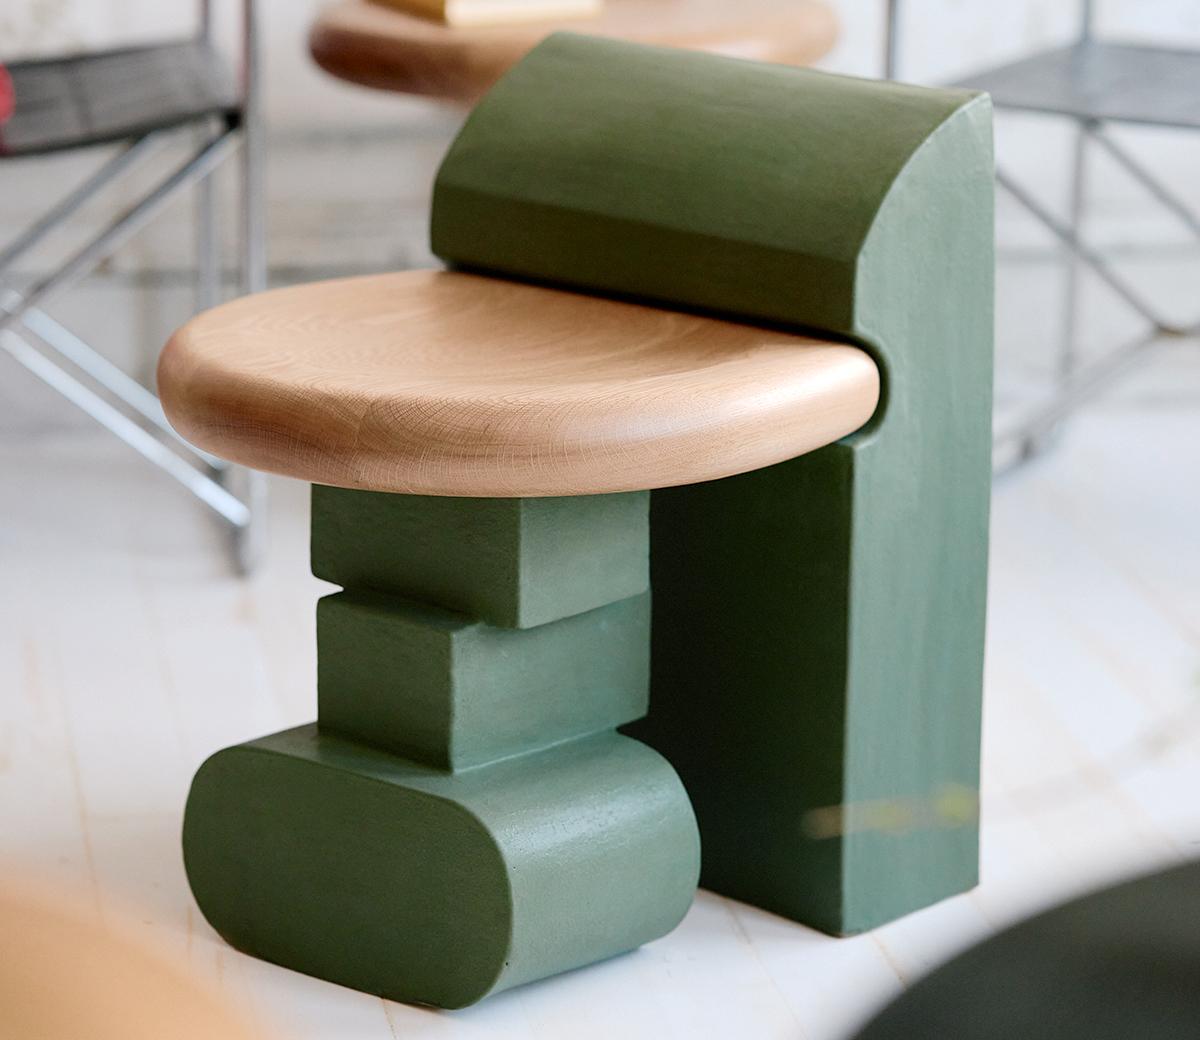 Dieser skulpturale Hocker besteht aus drei einzelnen Elementen, die sich ineinander schmiegen. Die handgefertigte Lehne und die Beine aus Ton stützen die Sitzfläche aus massiver Eiche und machen ihn zu einer perfekten, modularen Sitzgelegenheit für